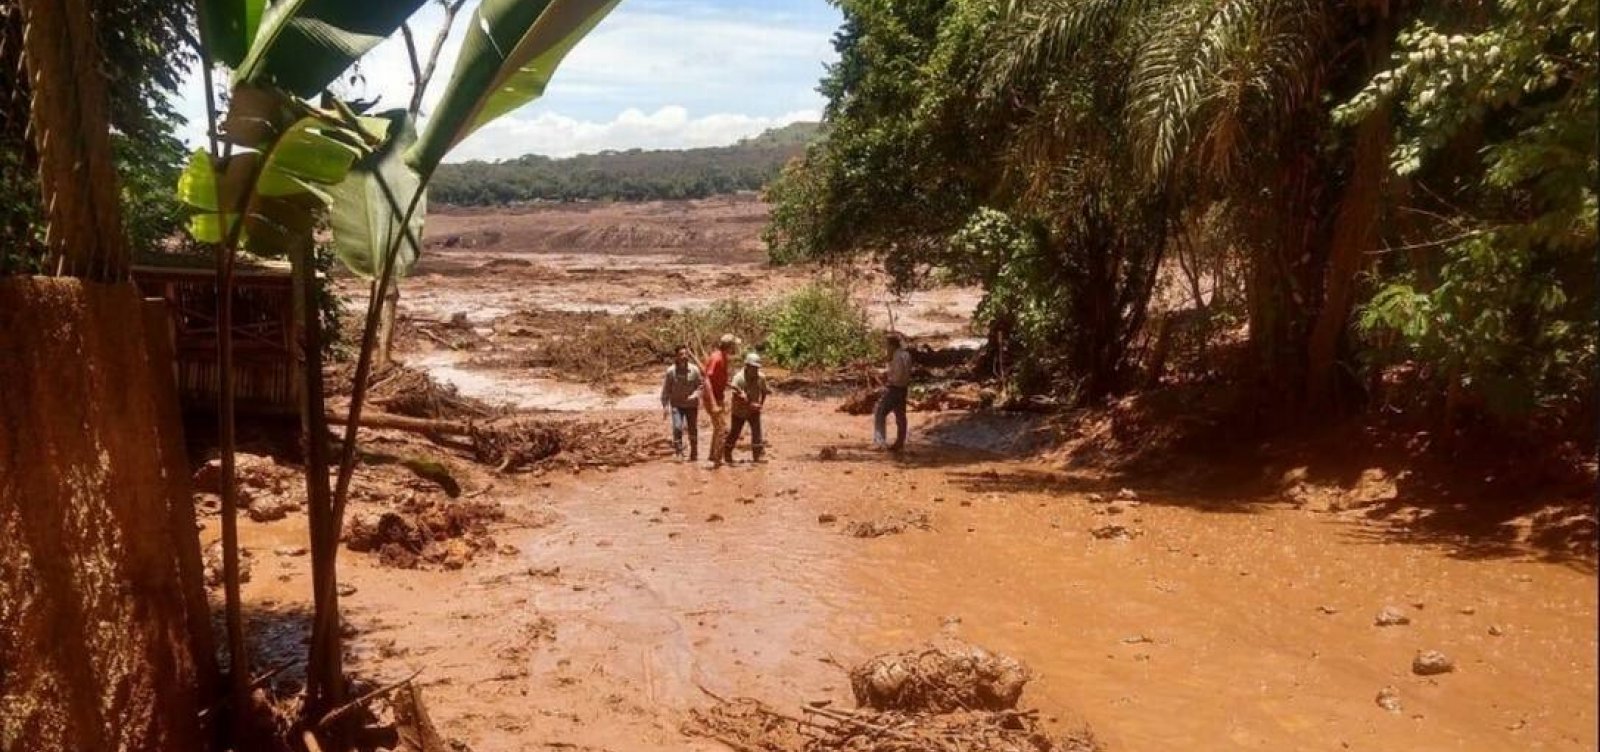 Vale destina R$1,8 bi até 2023 para obras e remoção de lama em Minas